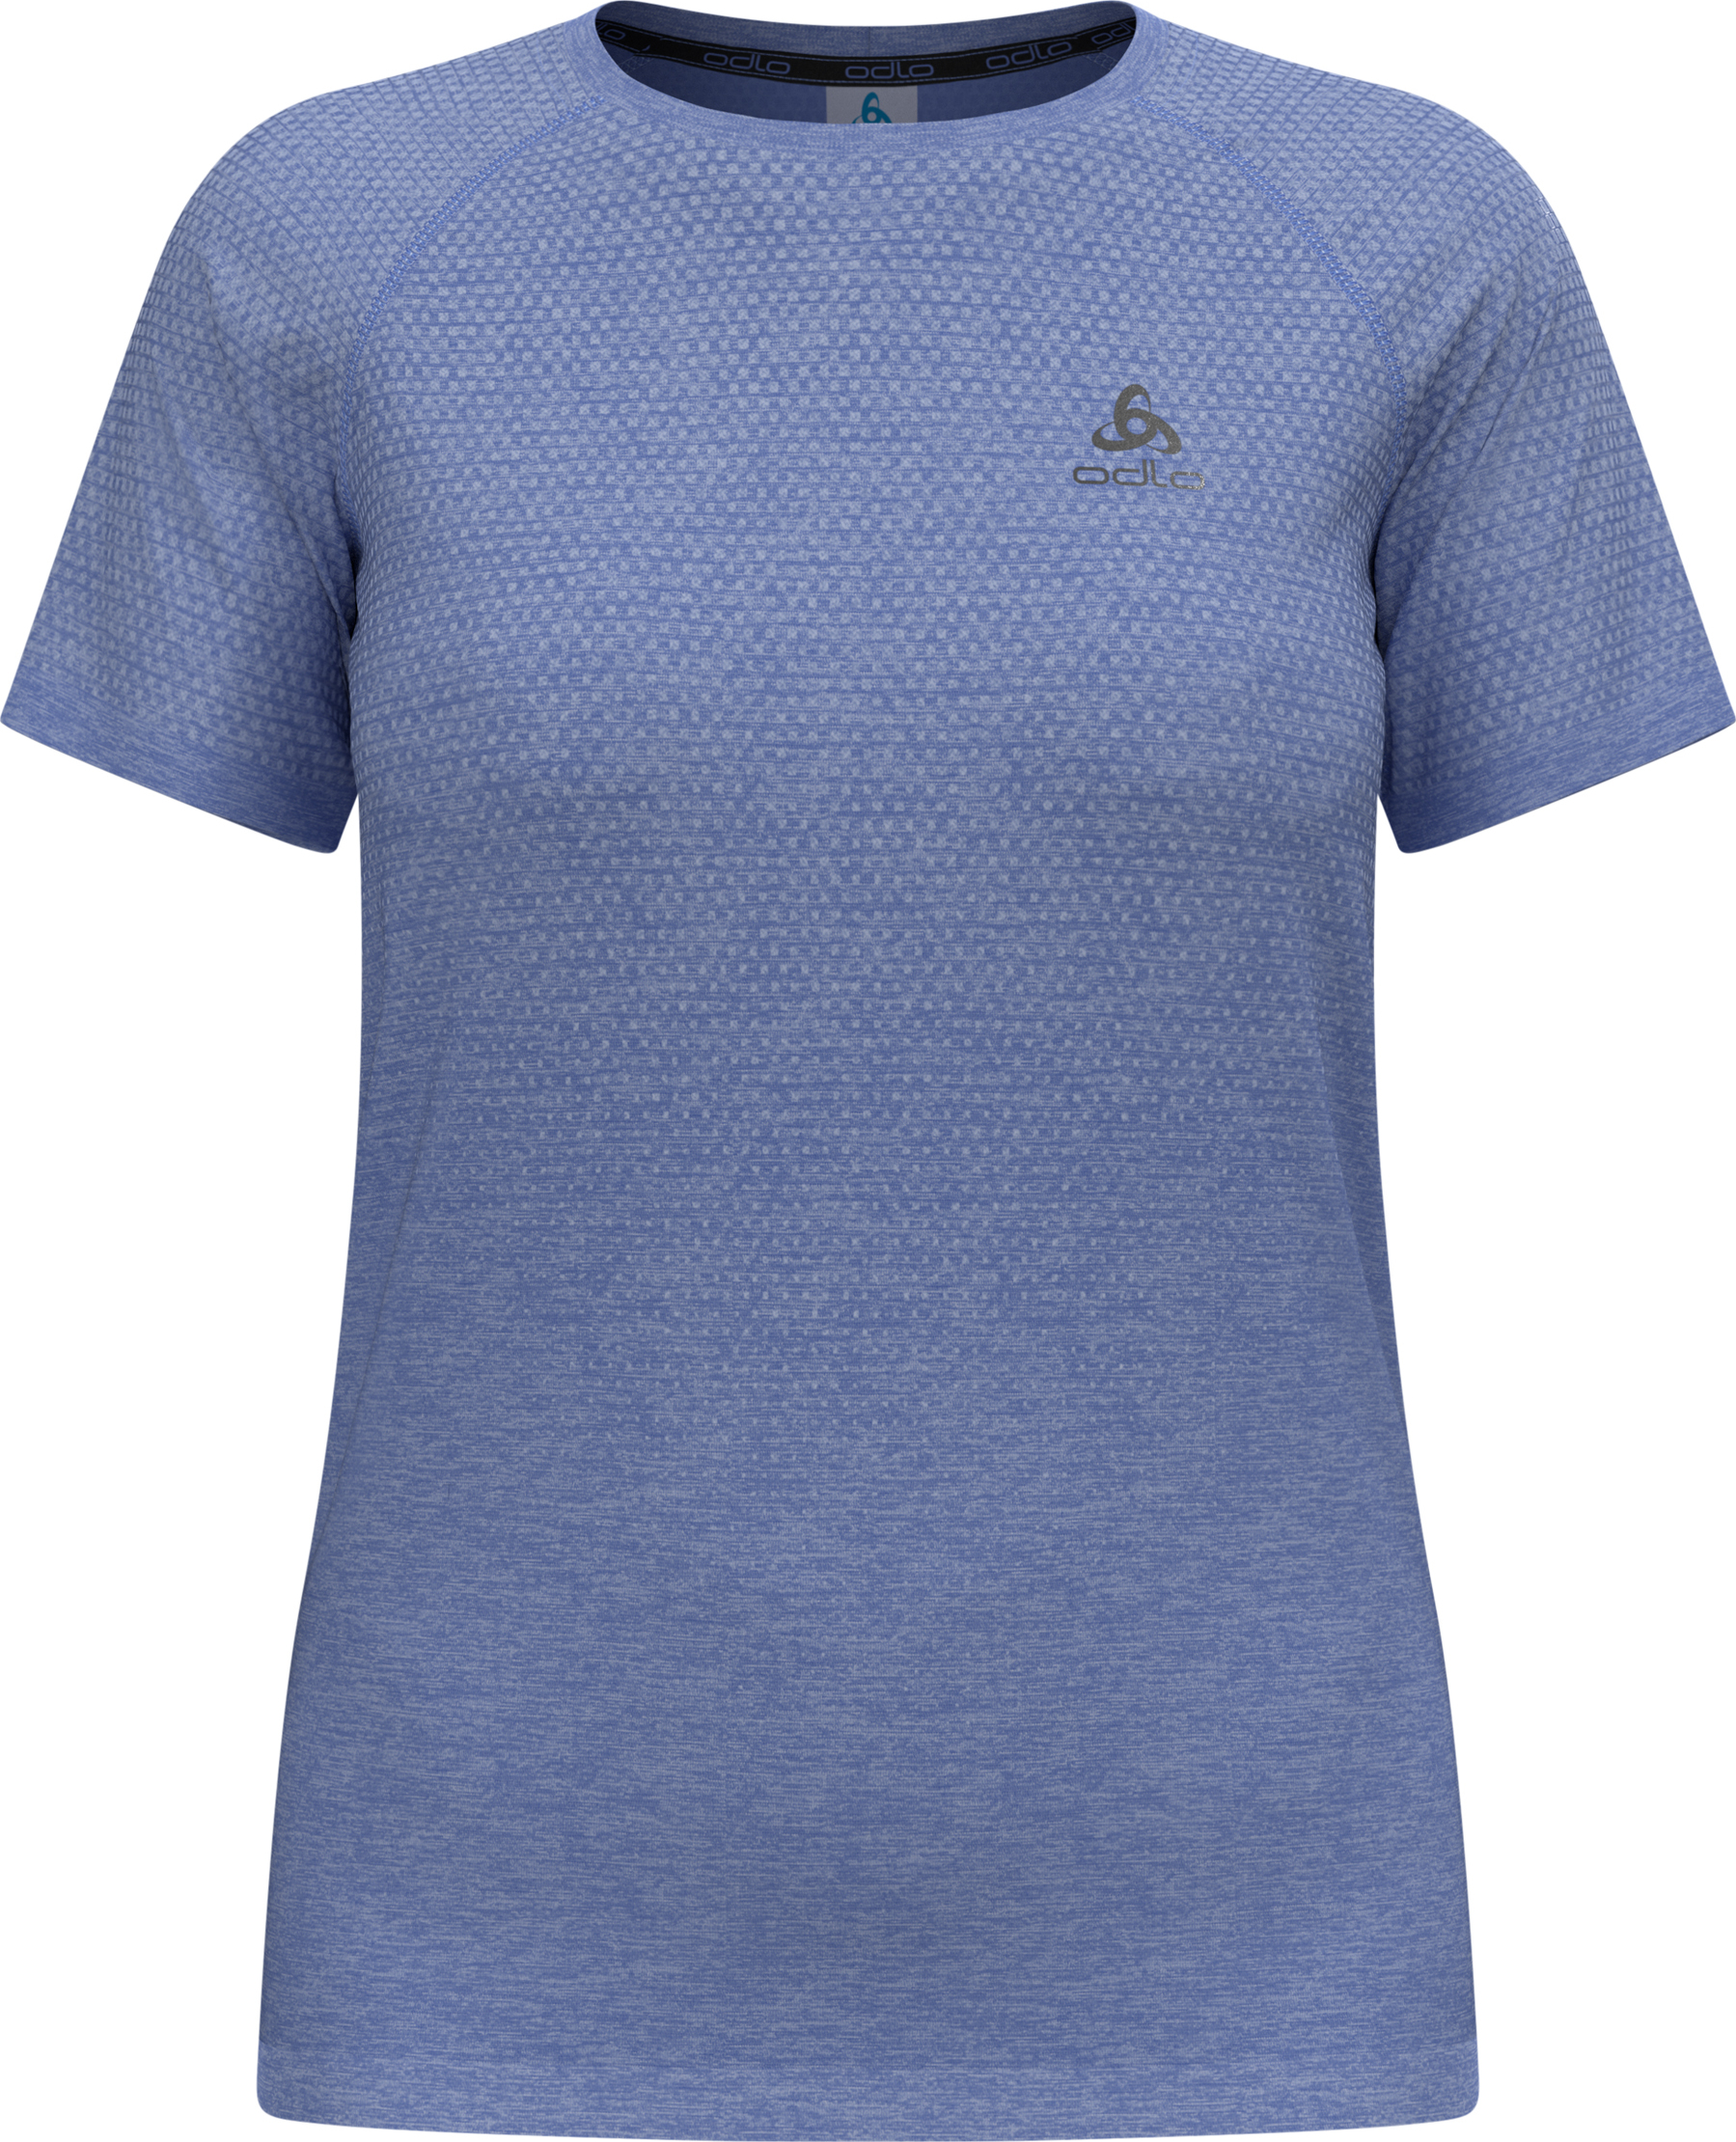 Odlo T-shirt Crew Neck Long Sleeve Essential Seamless - Women's